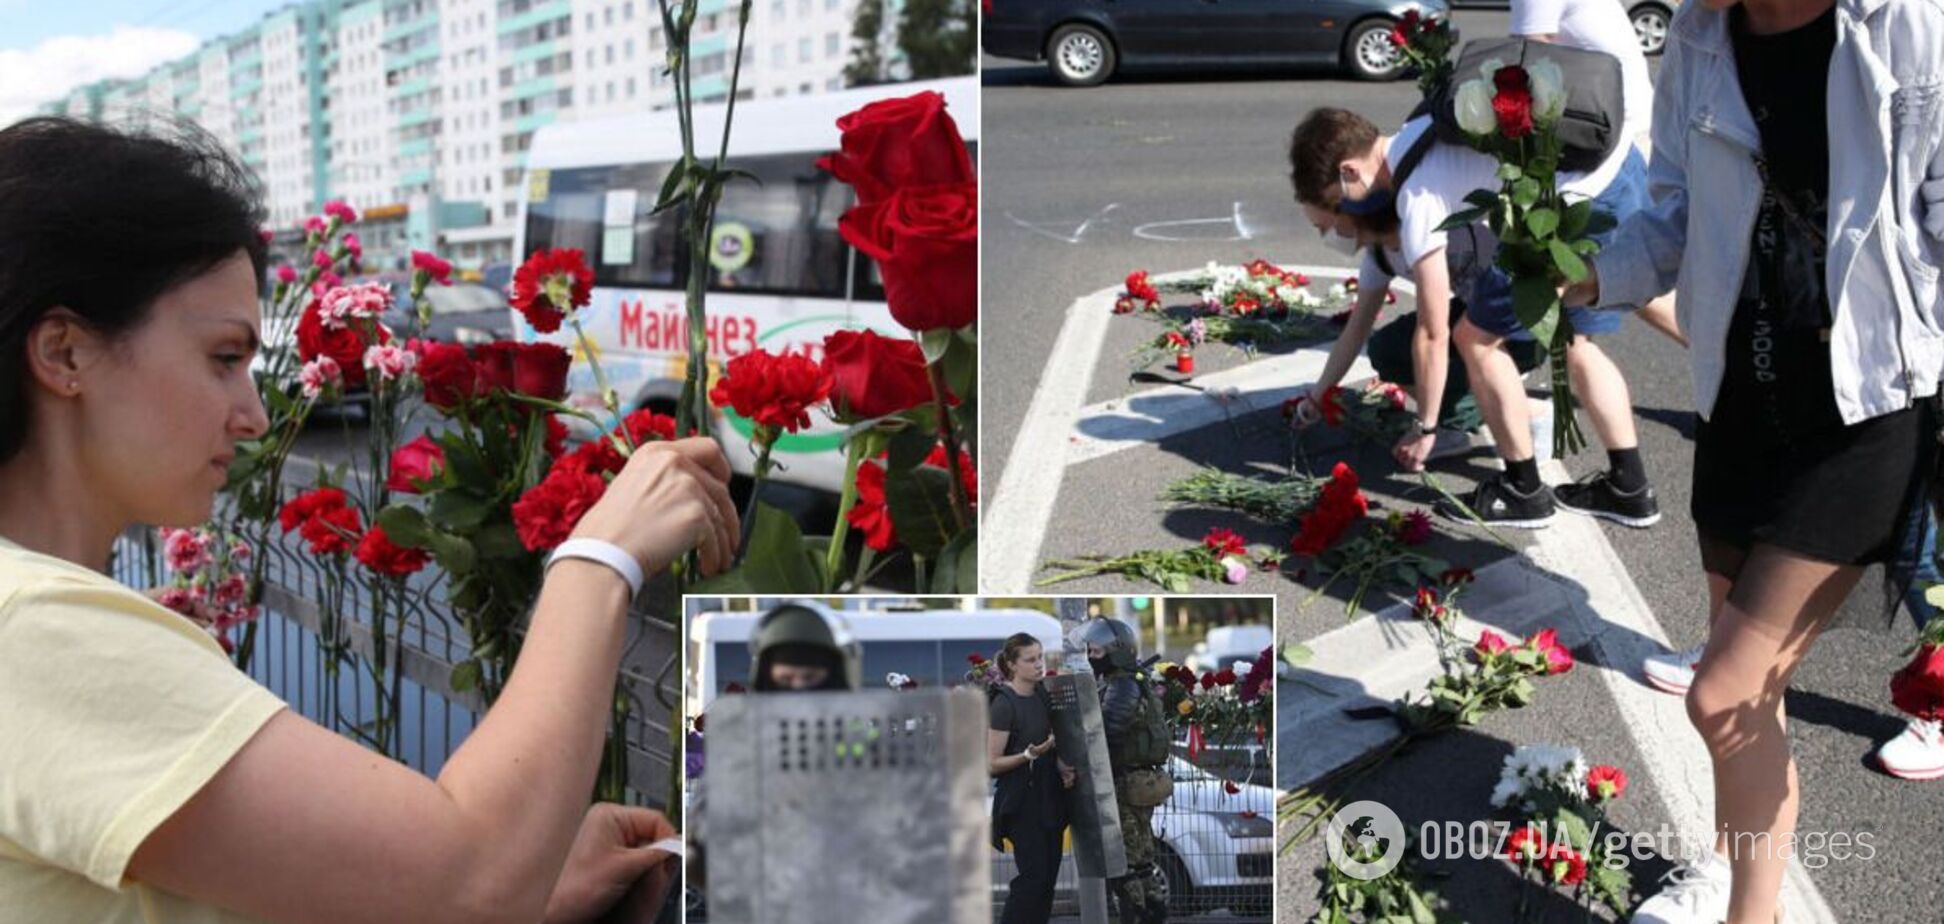 В Минске почтили память погибшего демонстранта